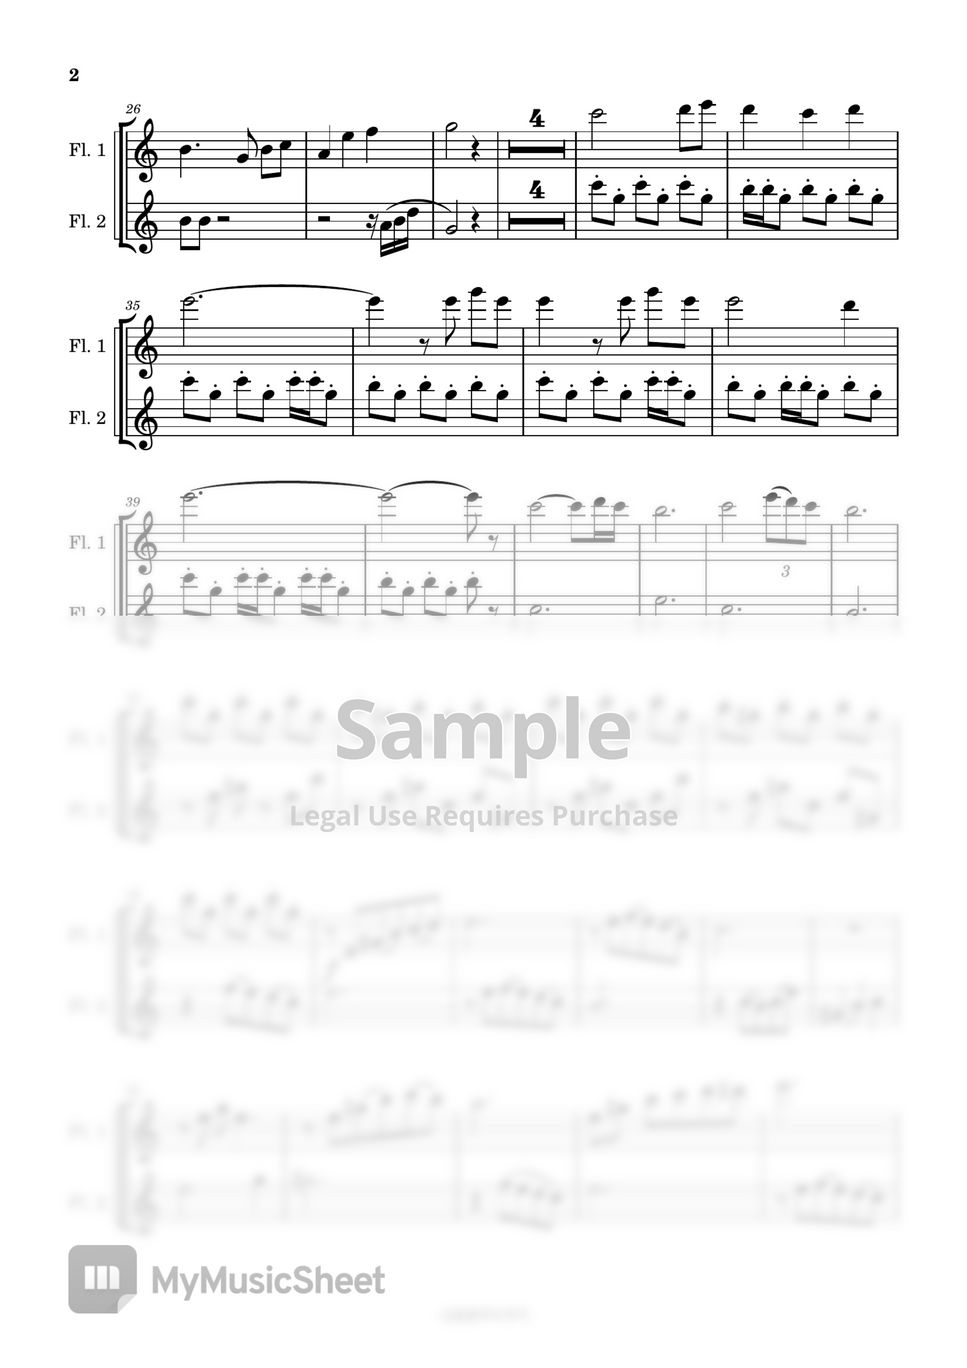 알렉상드르 데스플라 - Elisa's theme (Two flutes/반주 MR/피아노 악보) by 심플플루트뮤직